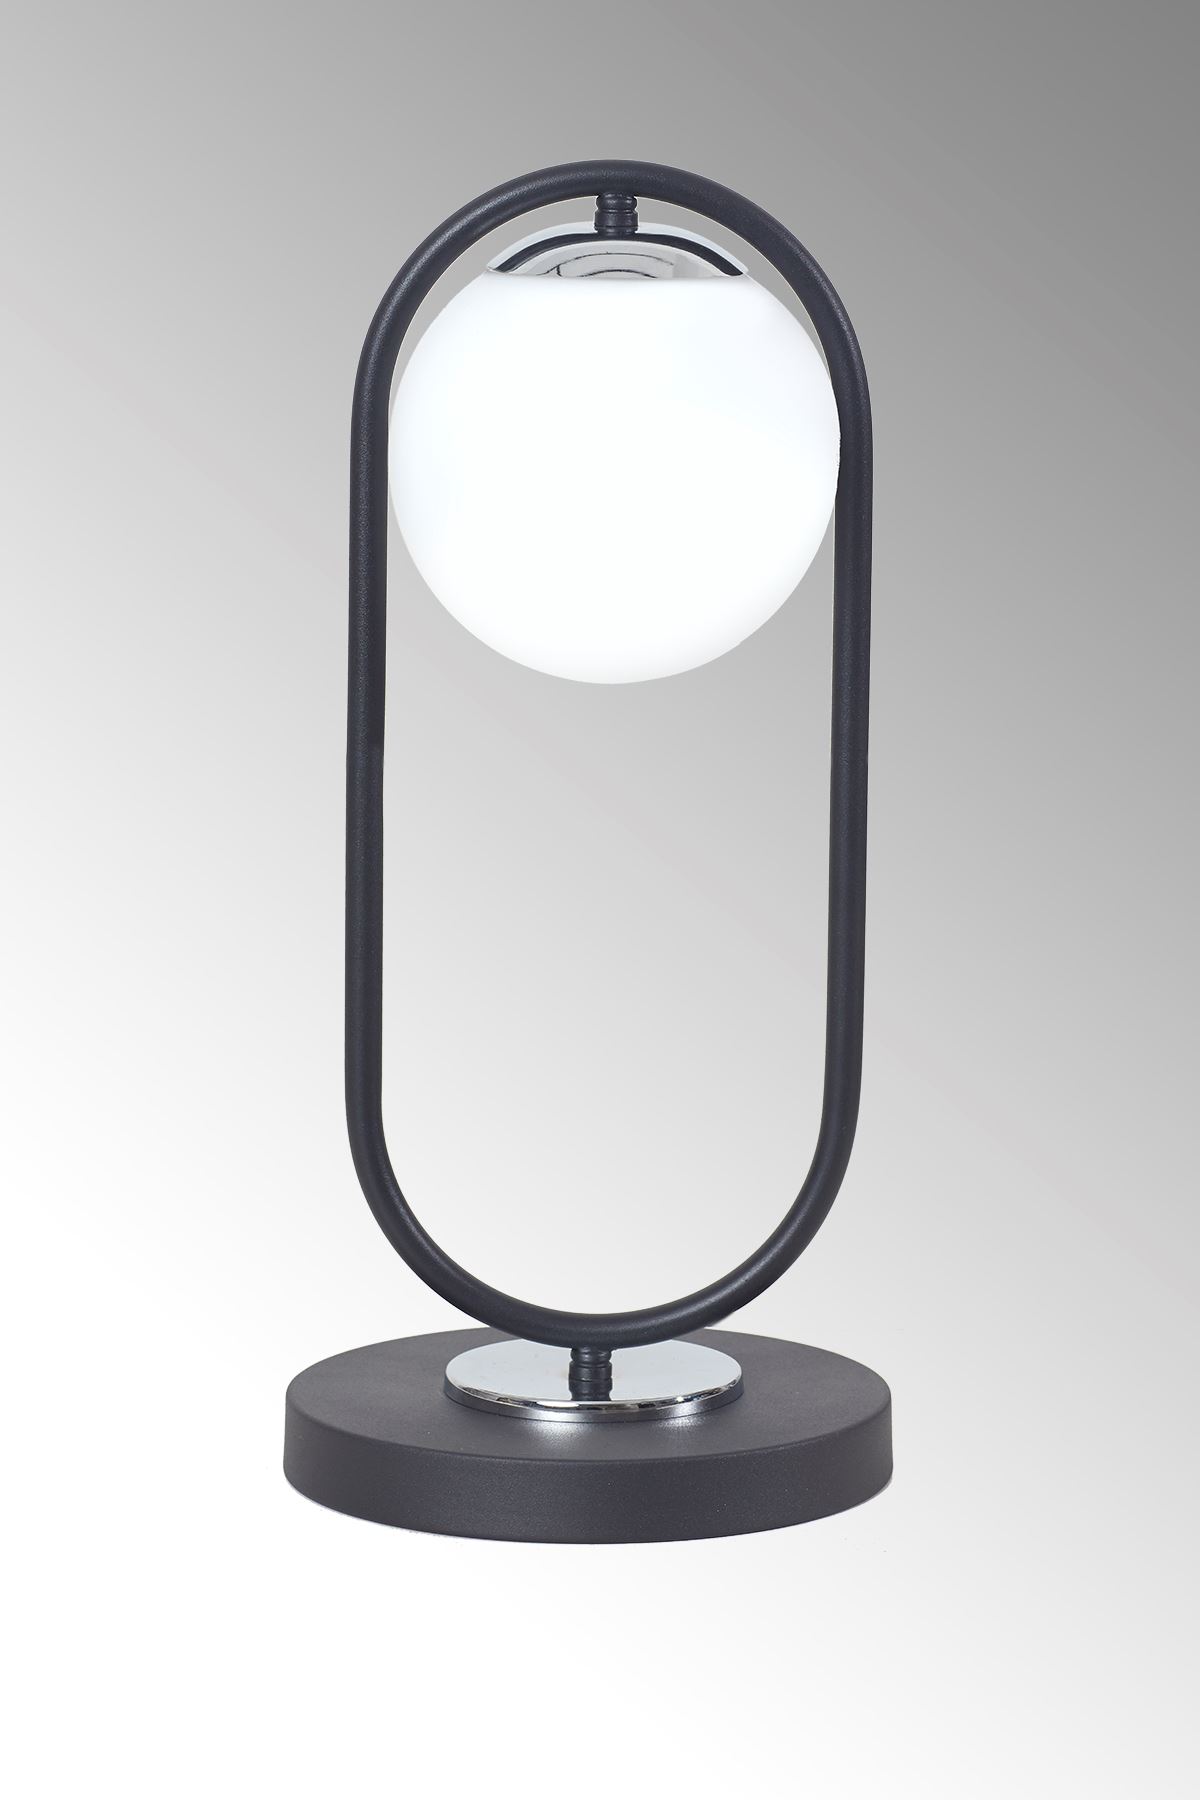 Zenga Siyah-Krom Metal Gövde Beyaz Camlı Tasarım Lüx Masa Lambası